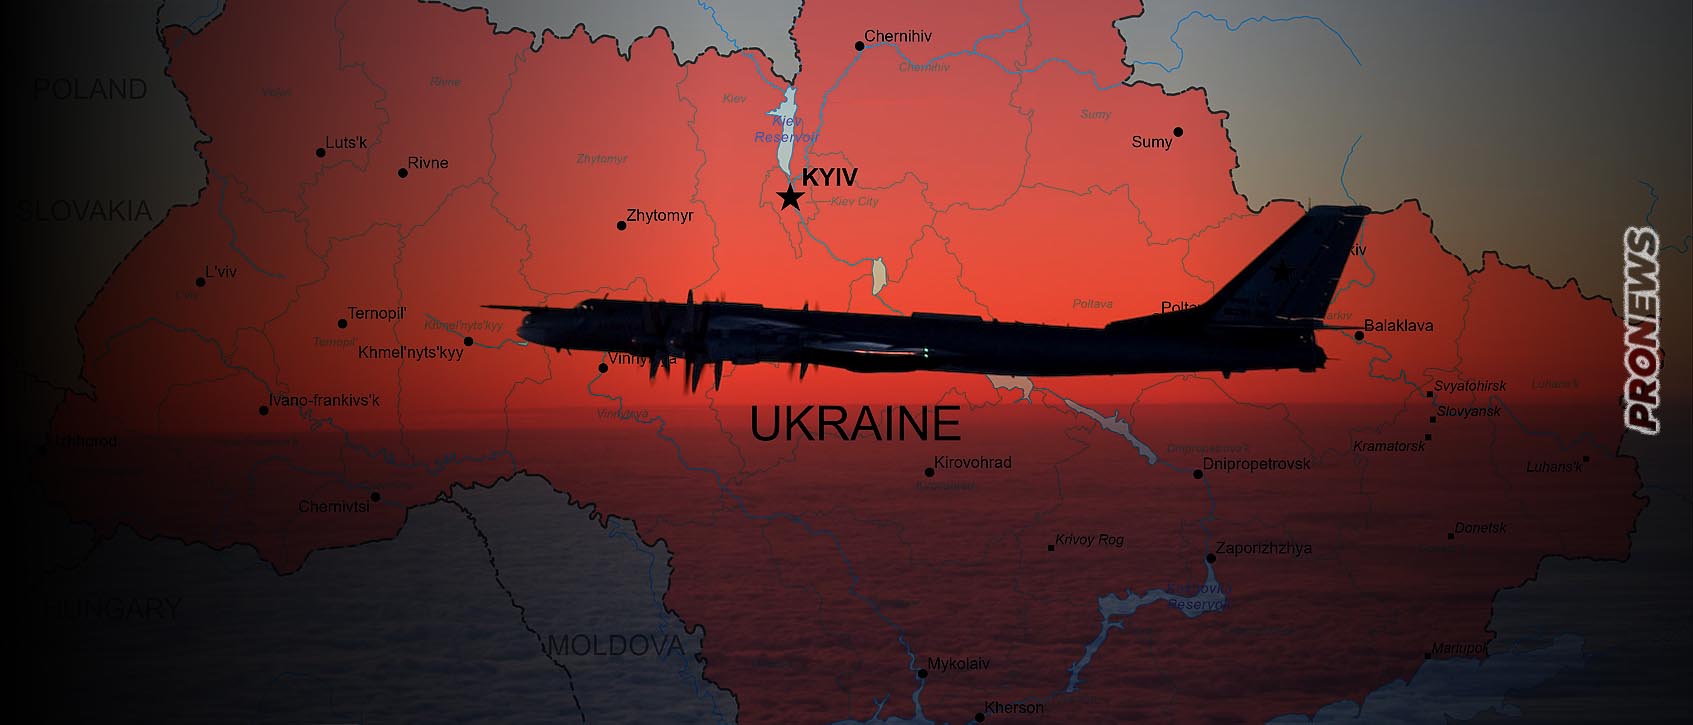 Πρωτοφανές κύμα ρωσικών πυραυλικών επιθέσεων σε όλη την Ουκρανία από δεκάδες βομβαρδιστικά και σκάφη επιφανείας